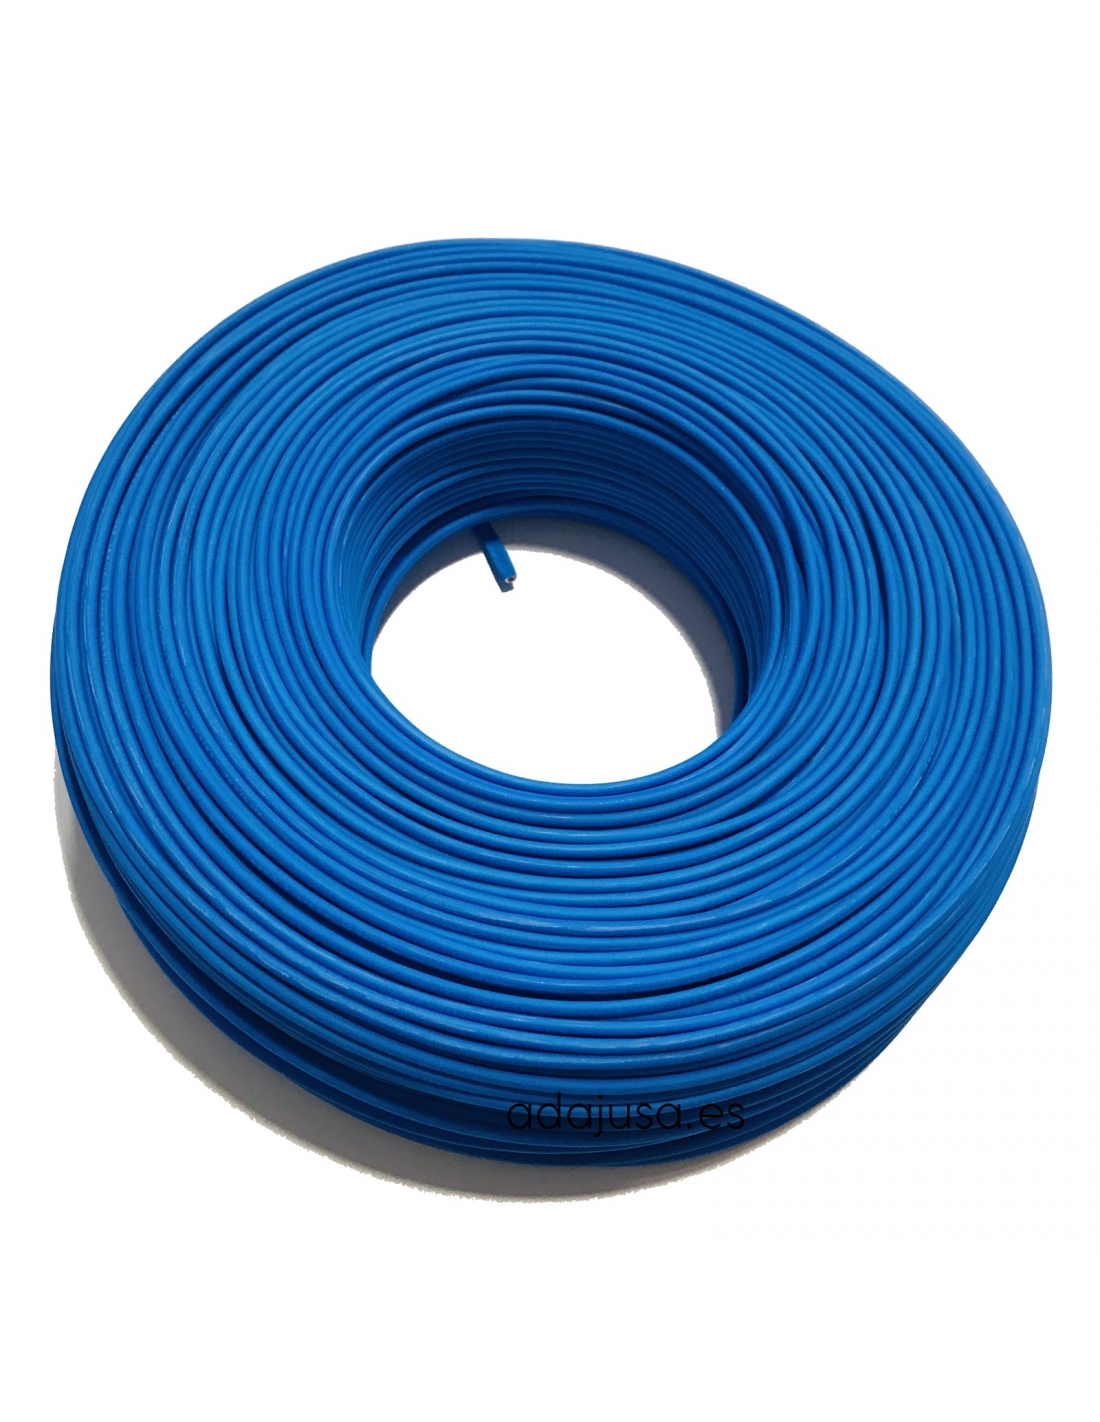 https://adajusa.fr/12593-thickbox_default/cable-flexible-unipolaire-1-mm-couleur-bleu.jpg